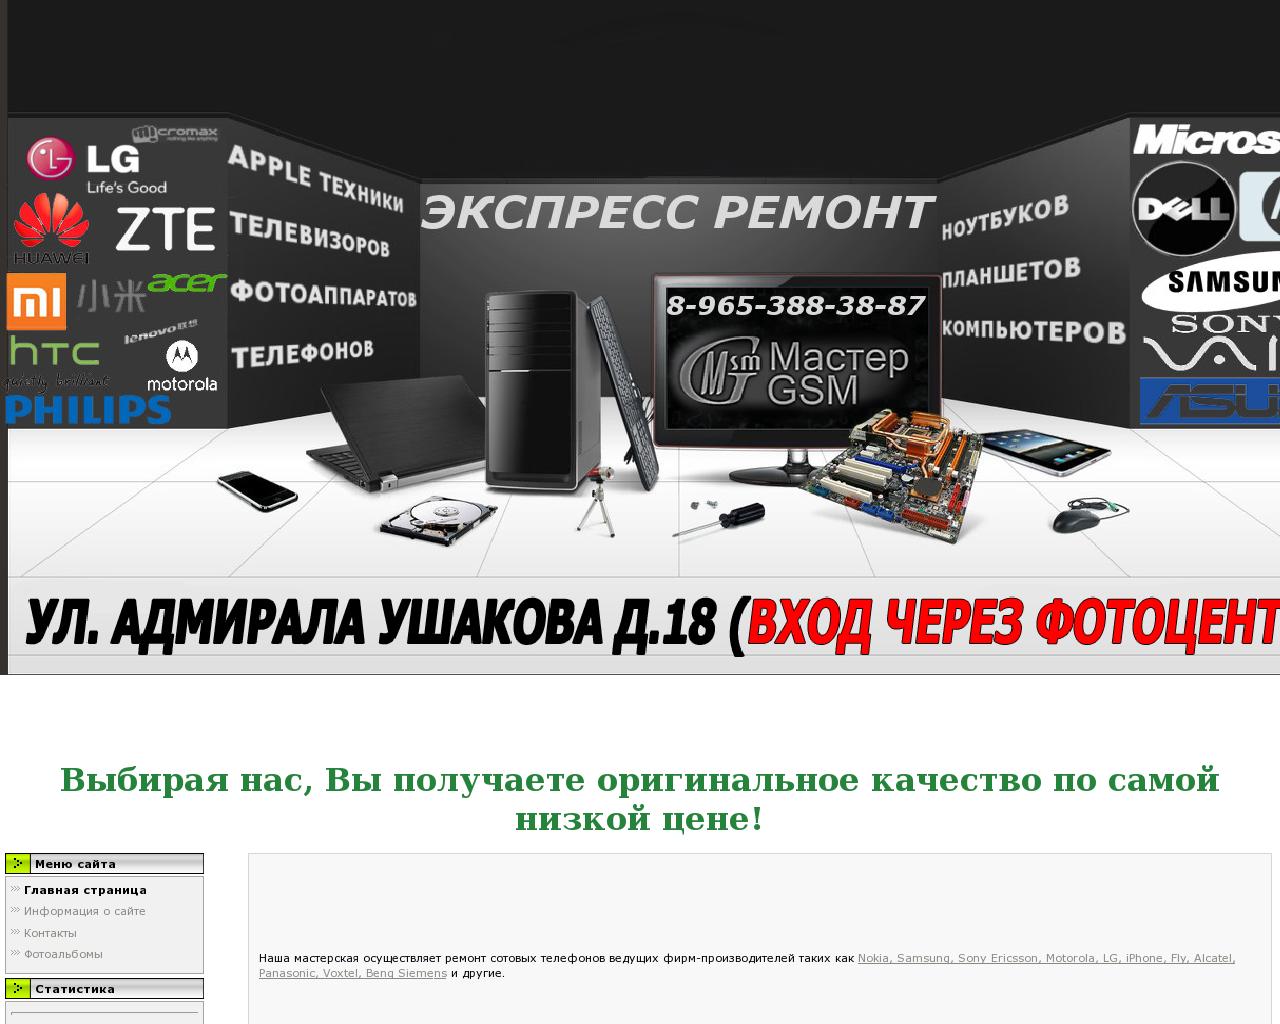 Изображение сайта masteragsm.ru в разрешении 1280x1024